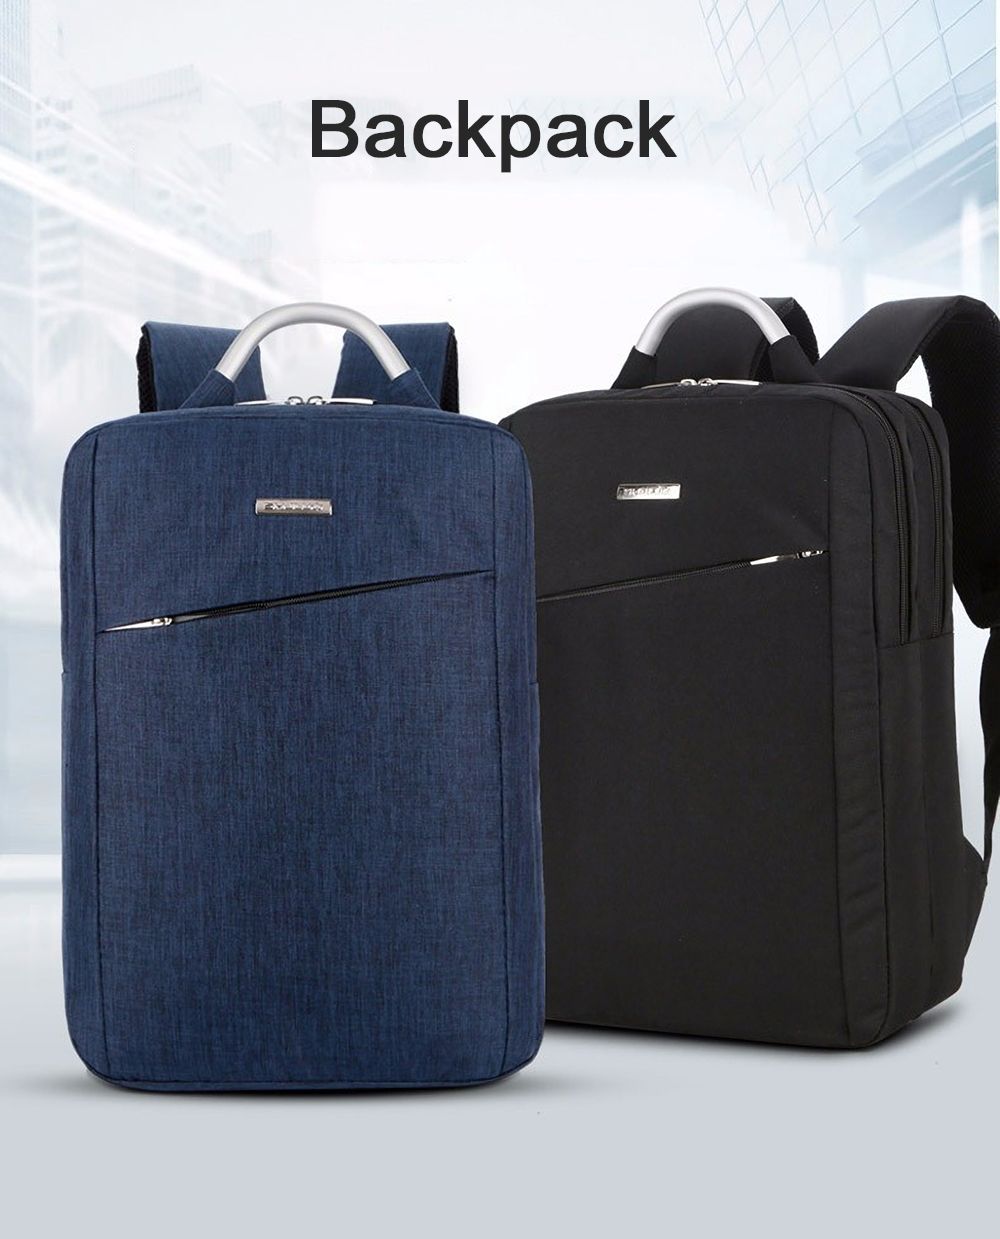 Laptop-Bag-Backpack-Mens-Shoulder-Bag-Business-Casual-Travel-Backpack-Computer-Bag-Schoolbag-for-156-1496119